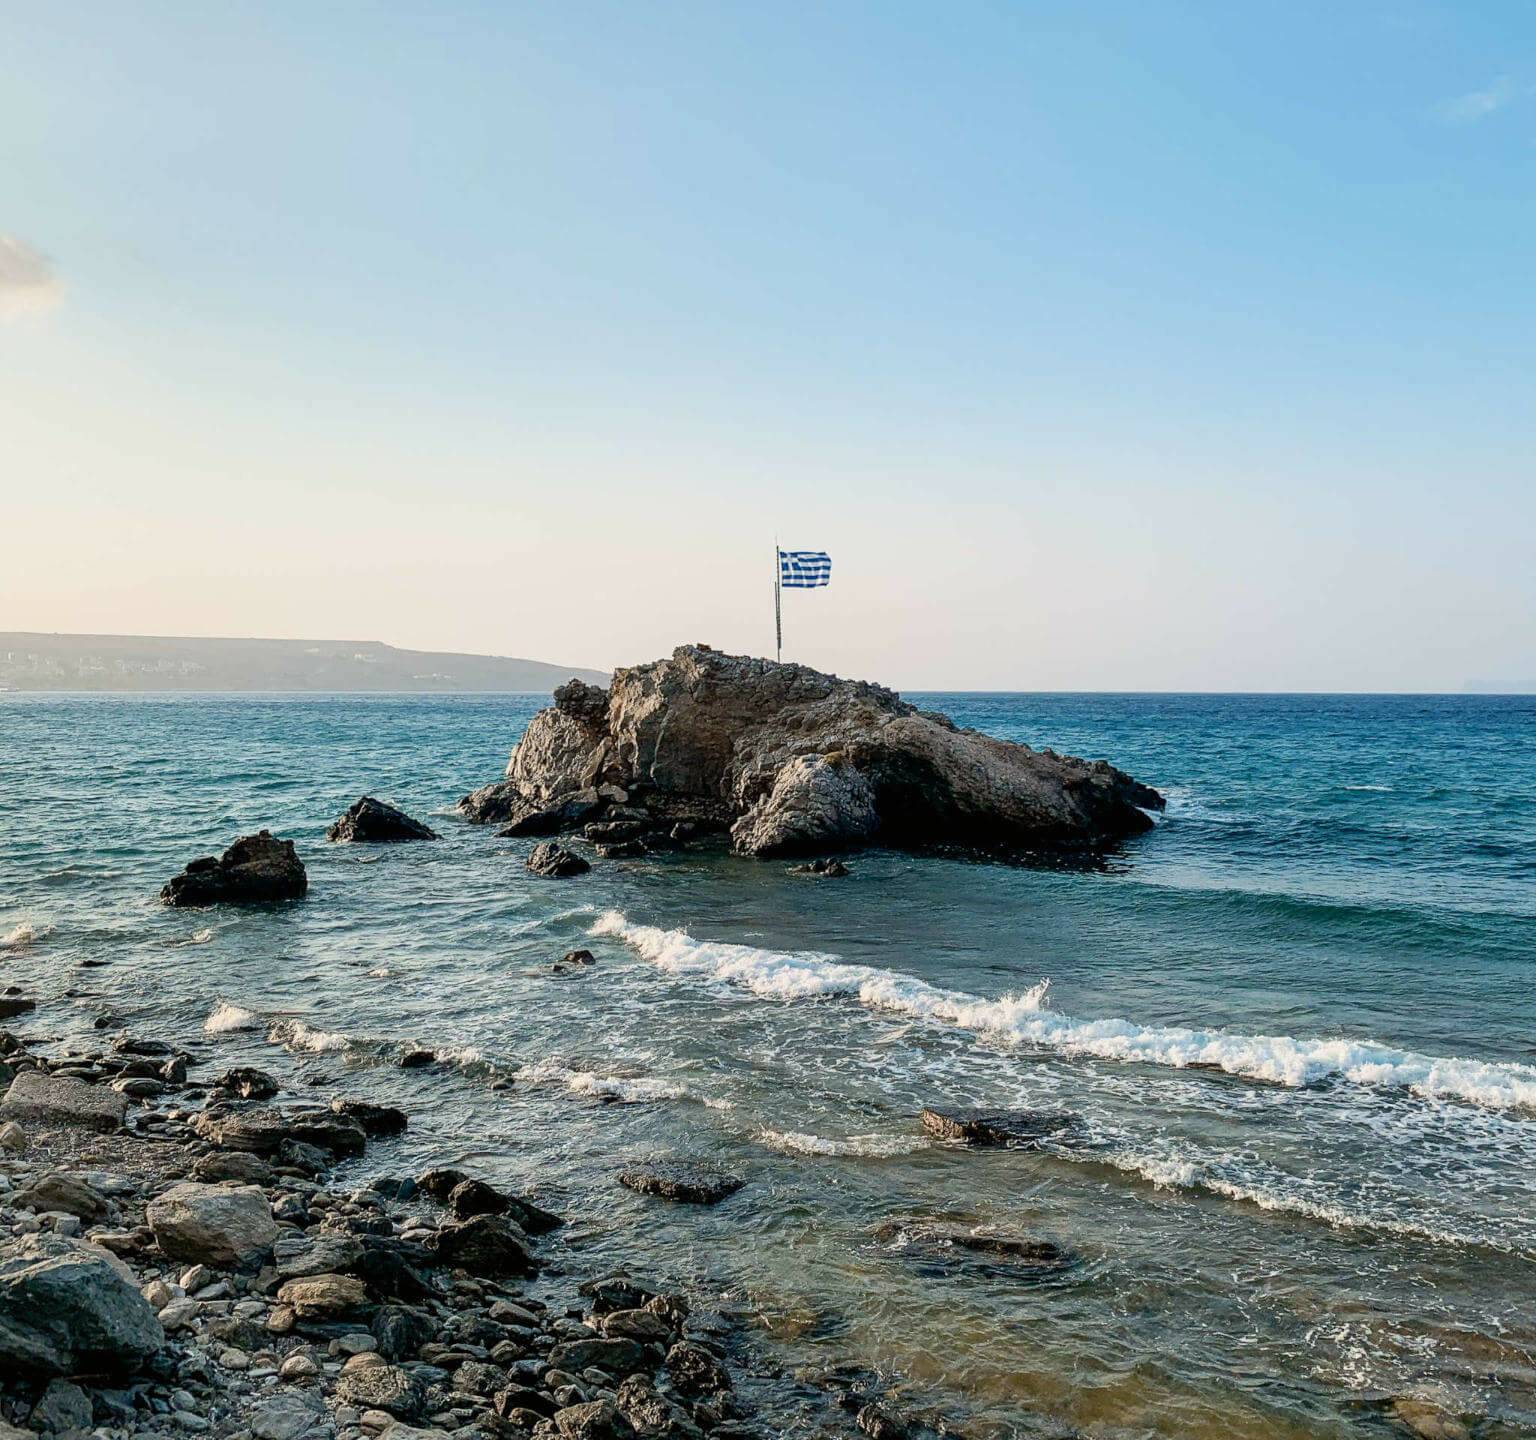 Leichter Wellengang an einem Steinstrand, aus dem türkisblauen Wasser erhebt sich ein Felsen mit Griechenlands Flagge darauf.